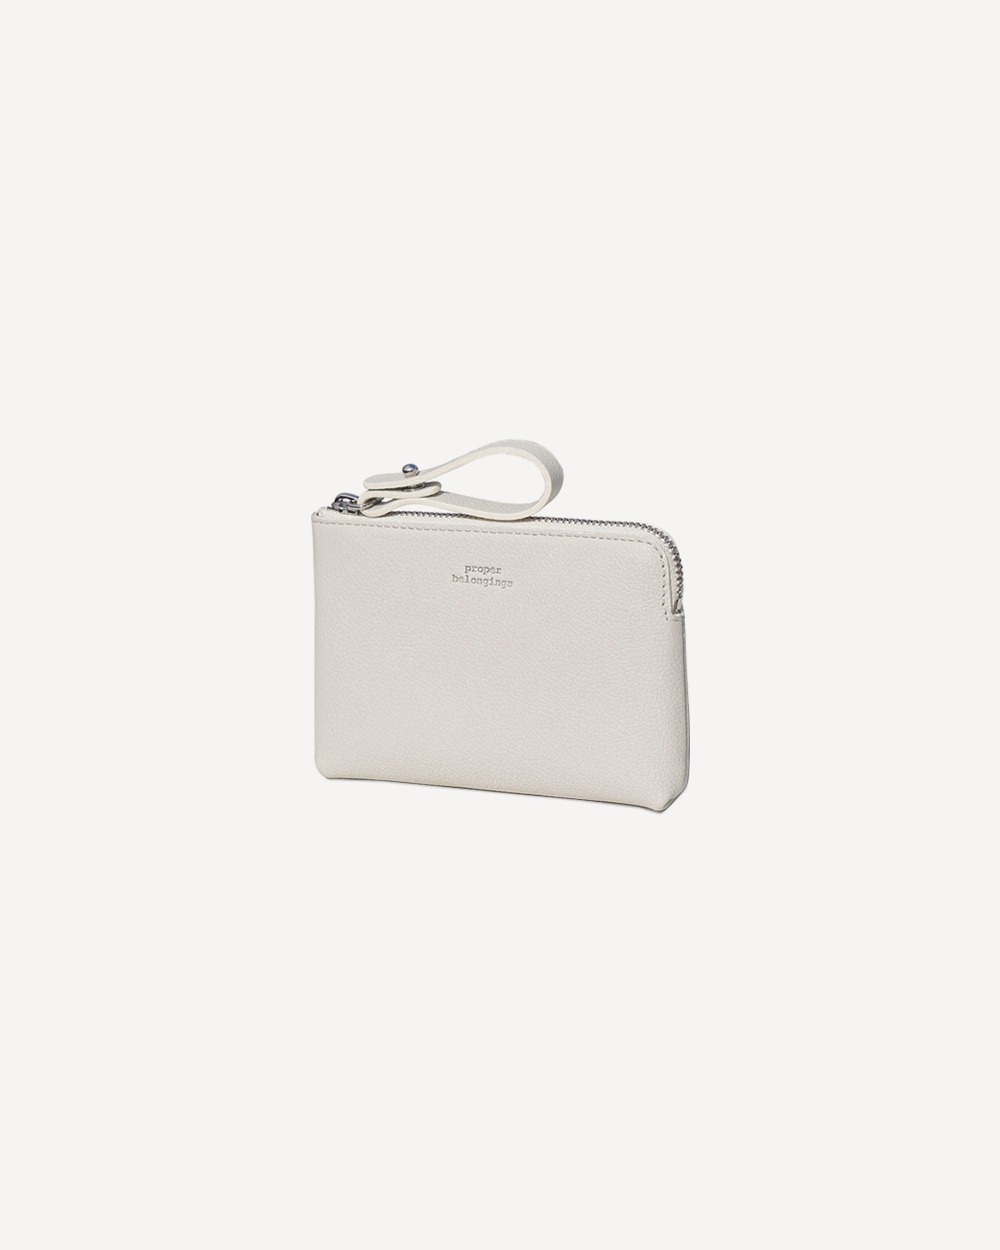 Proper Zipper Wallet / Light gray